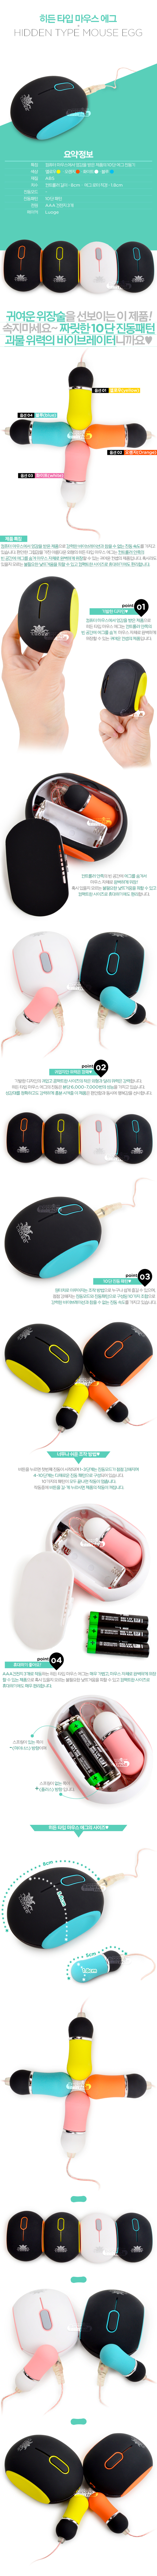 [10단 진동] 히든 타입 마우스 에그(Hidden Type Mouse Egg) - LG-606